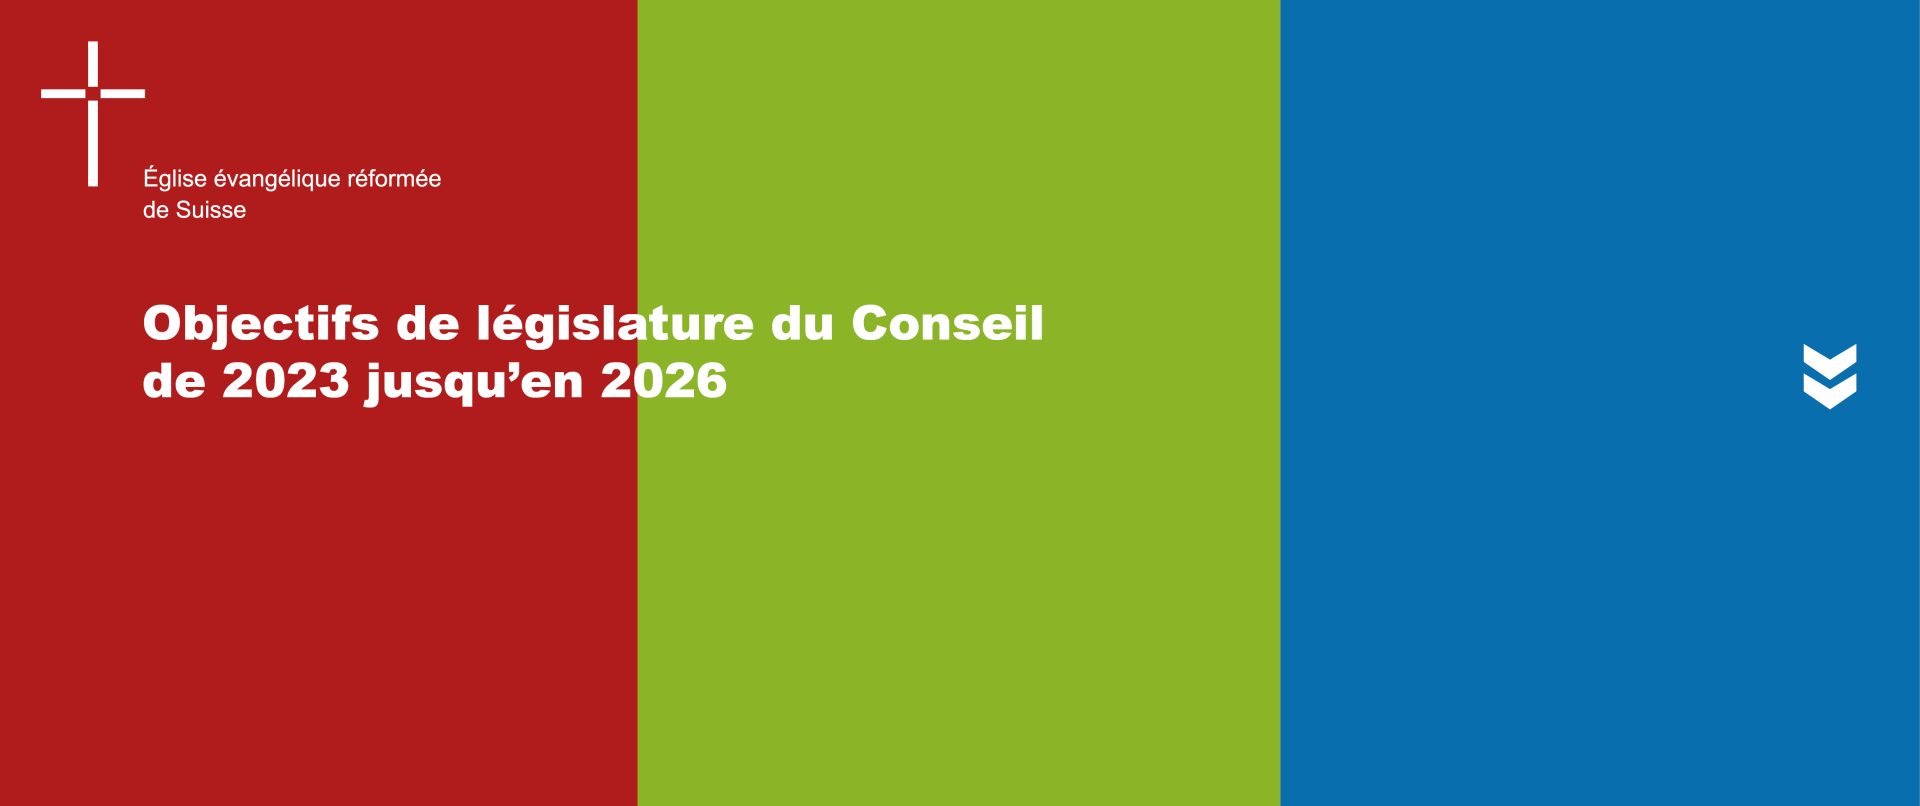 Objectifs de législature du Conseil de 2023 jusqu’en 2026